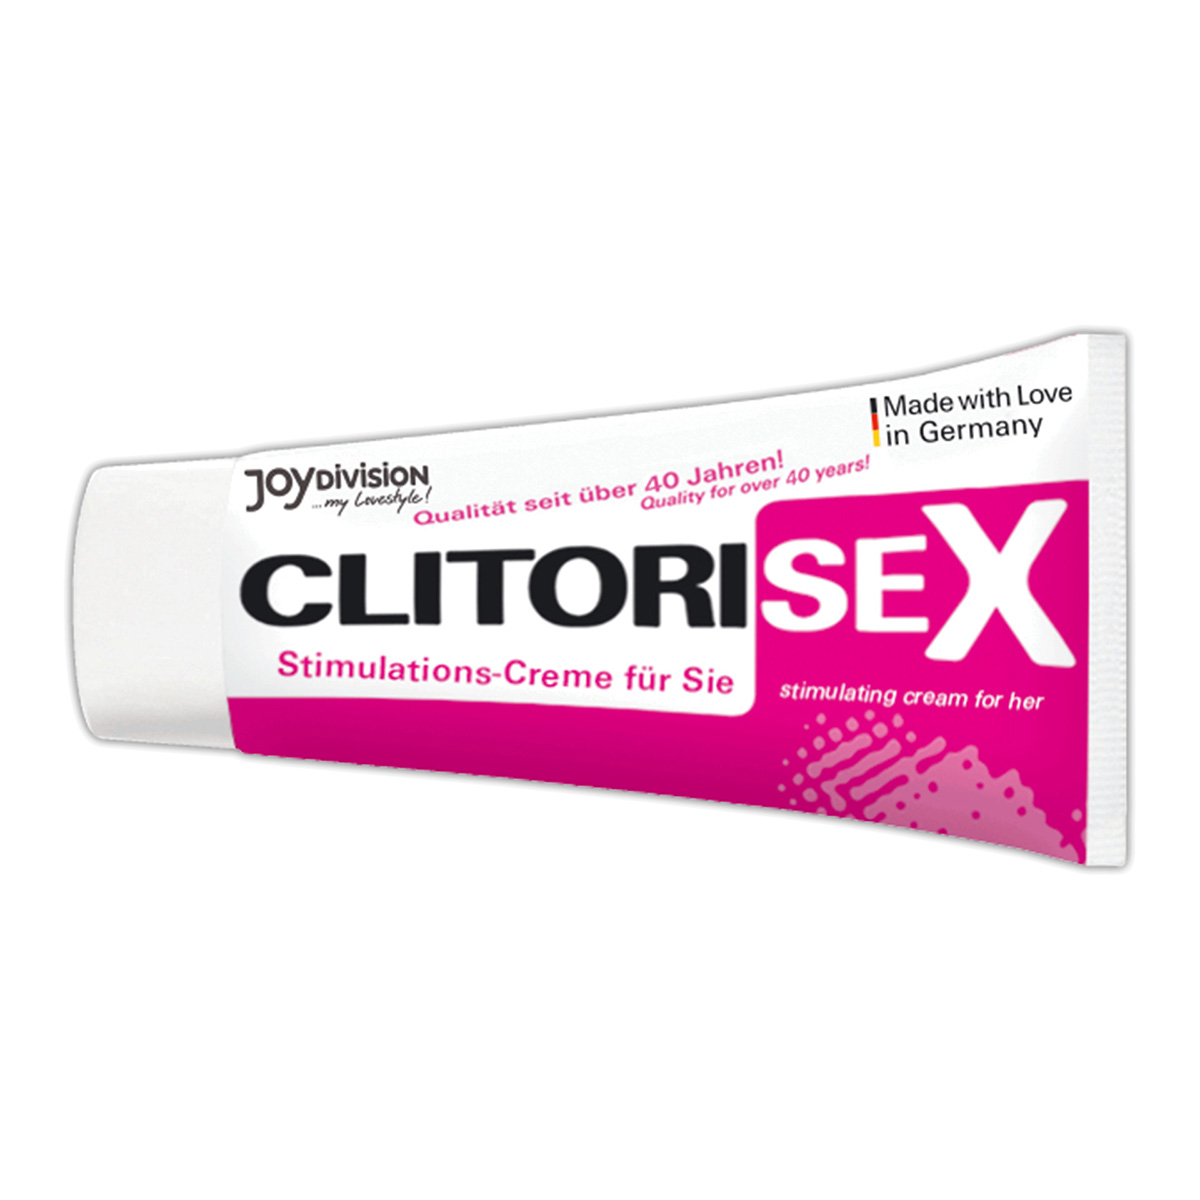 CLITORISEX – Stimulating Cream 40 ml